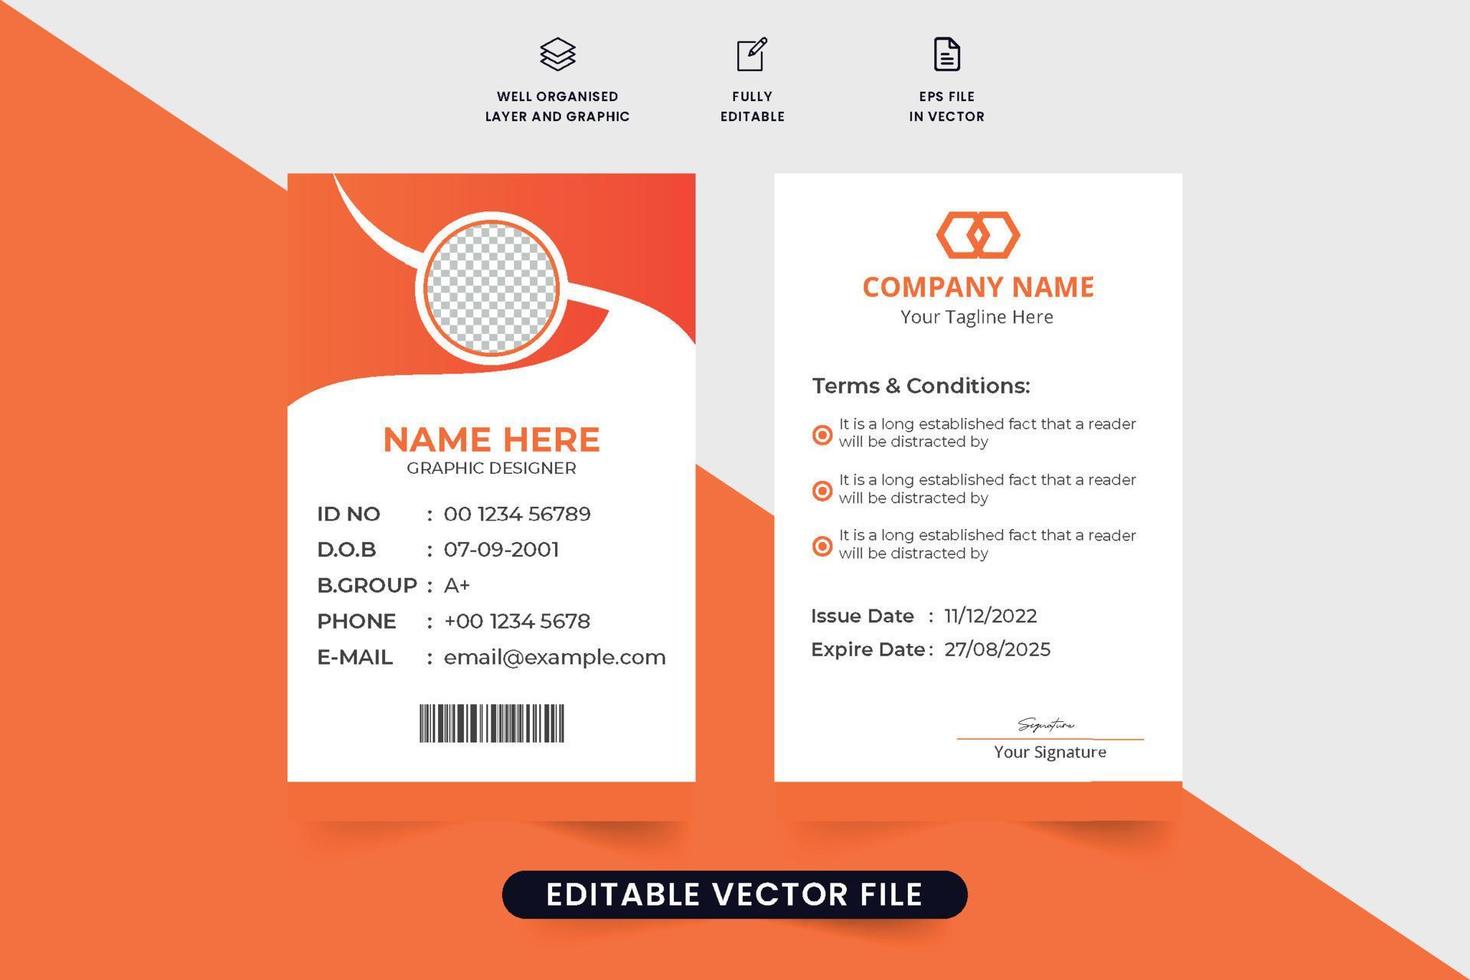 büromaterial und ausweisdesign mit abstrakten formen. Firmenausweis-Vorlagenvektor mit Foto-Platzhalter. Druckfertiges Ausweisdesign für Mitarbeiter oder Studenten mit oranger Farbe. vektor